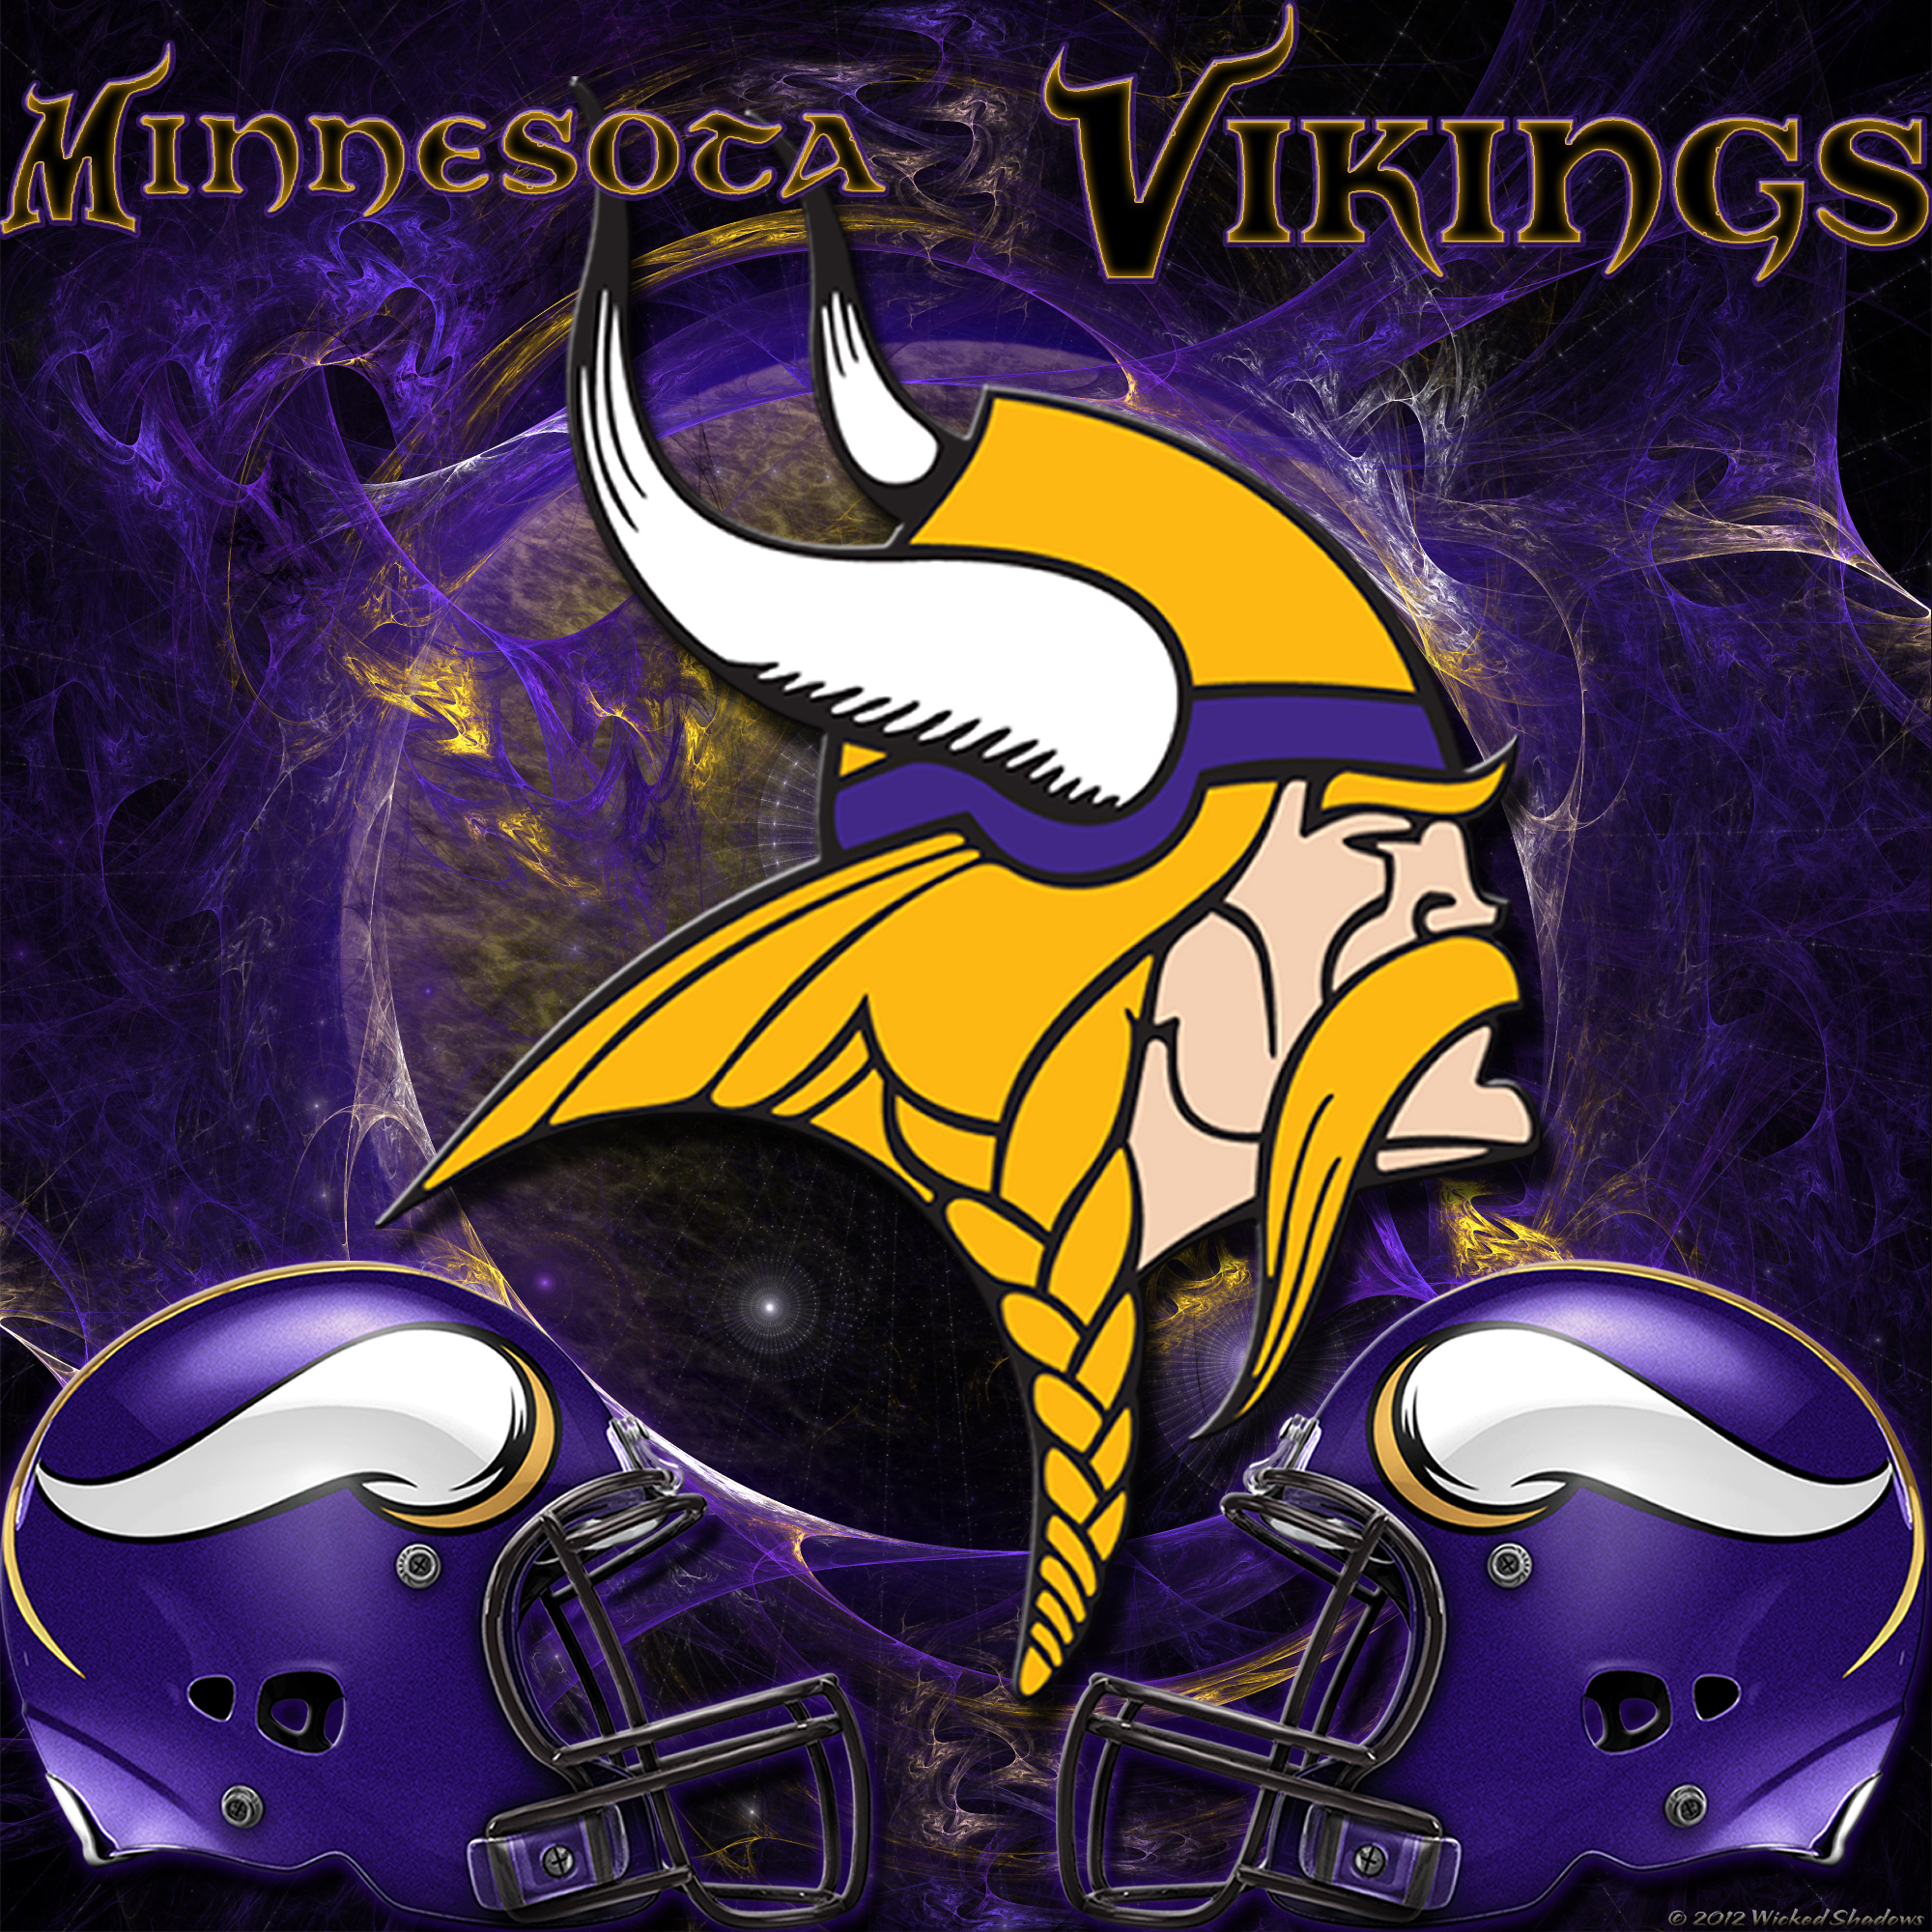 45+] Minnesota Vikings Wallpaper for iPads - WallpaperSafari